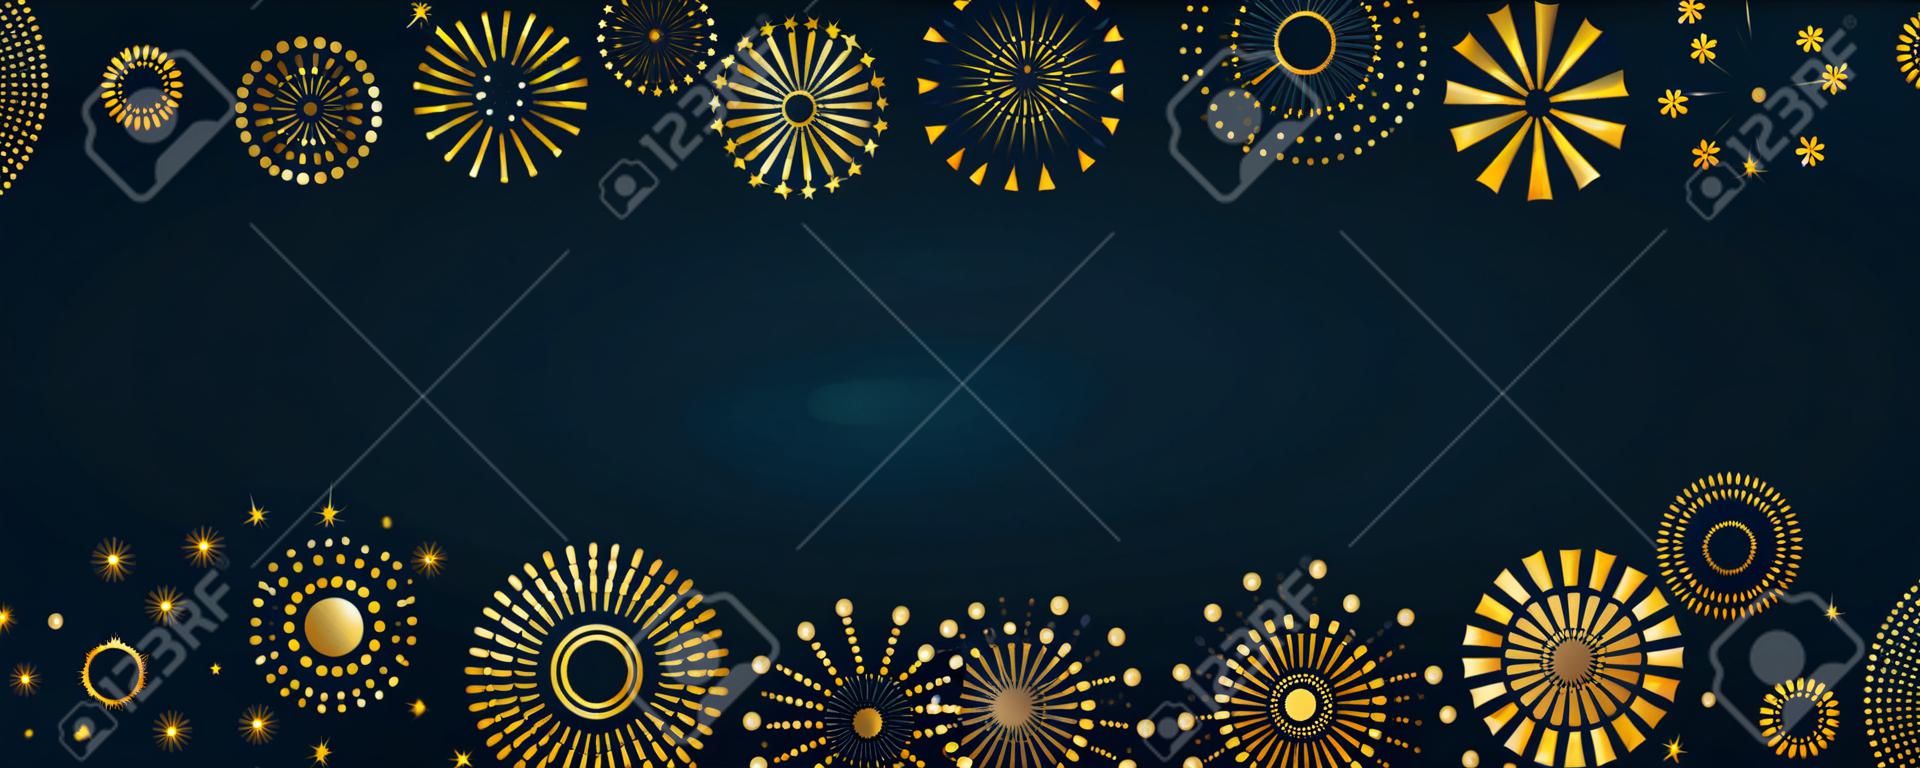 Marco de fuegos artificiales dorados, brillante sobre fondo oscuro, con espacio de copia. Ilustración de vector de estilo plano. Diseño geométrico abstracto. Concepto para Año Nuevo, tarjeta de felicitación de cumpleaños, afiche, pancarta, volante.